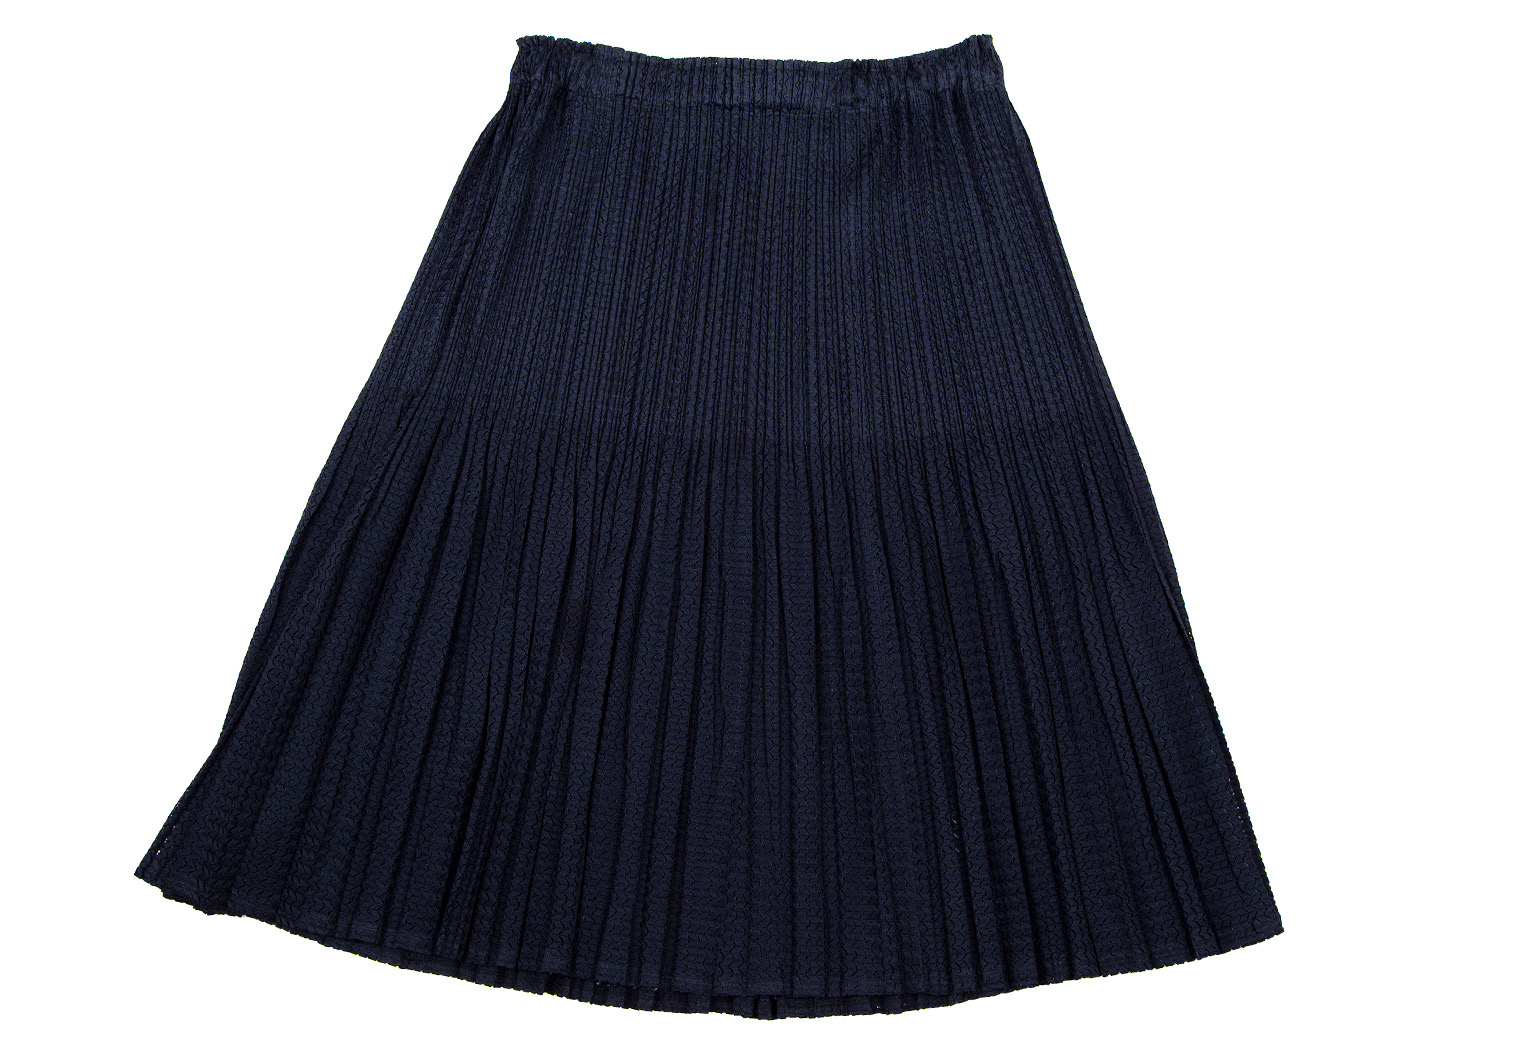 濃紺 ポリエステル100% シースループリーツスカート丈72cm - ロング